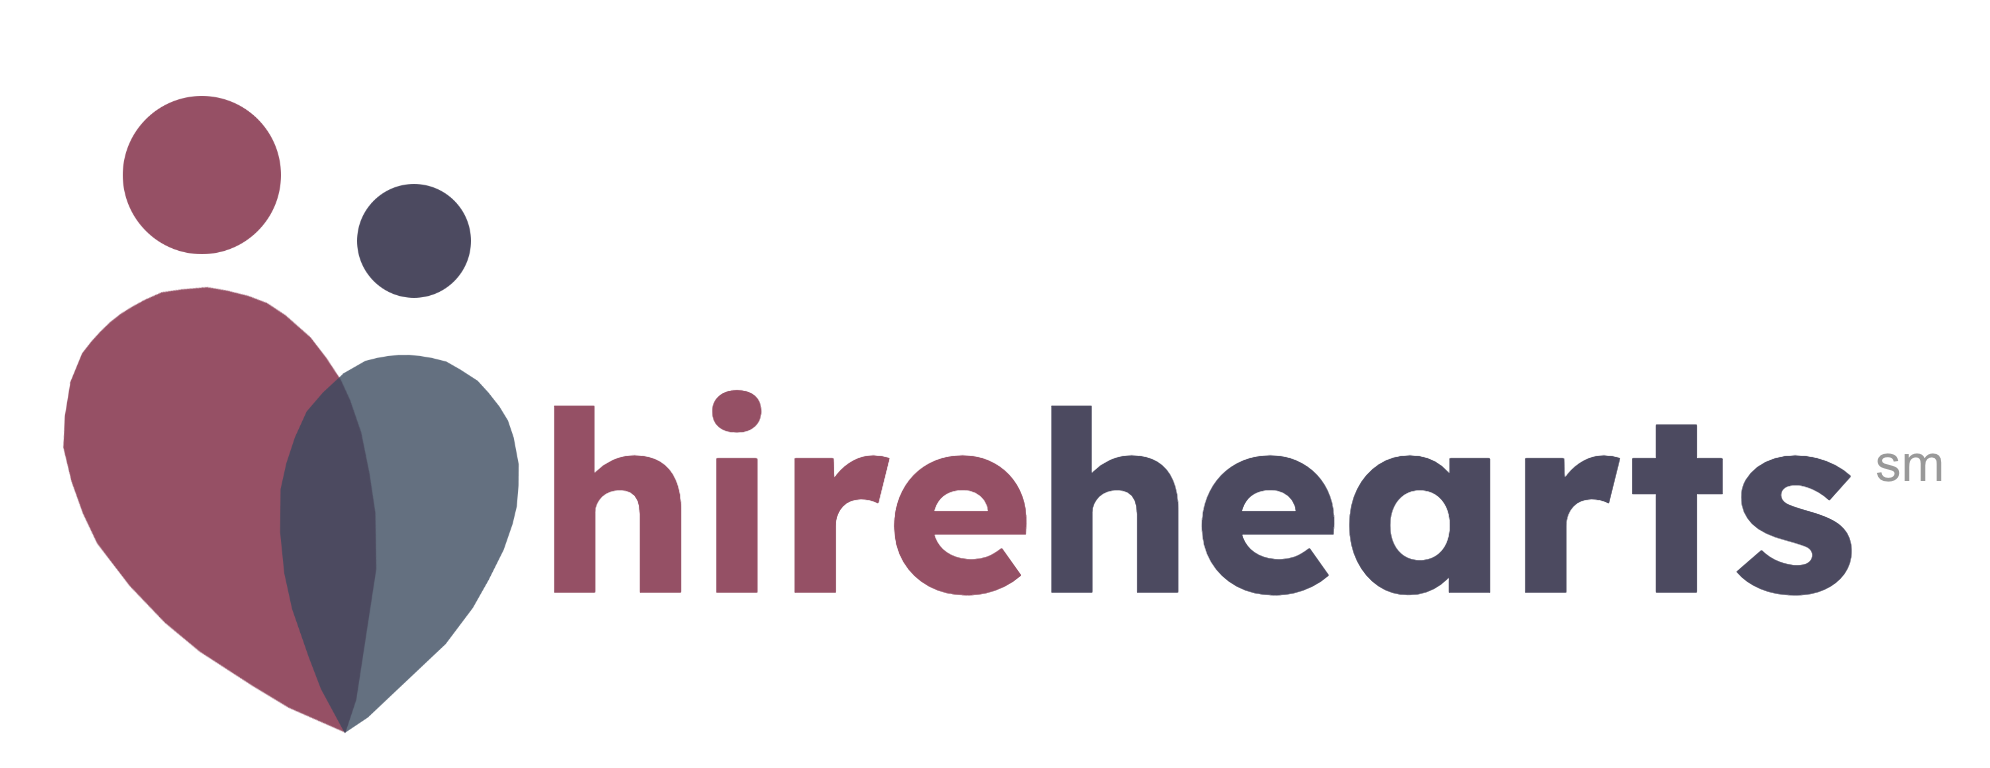 Hire Hearts logo